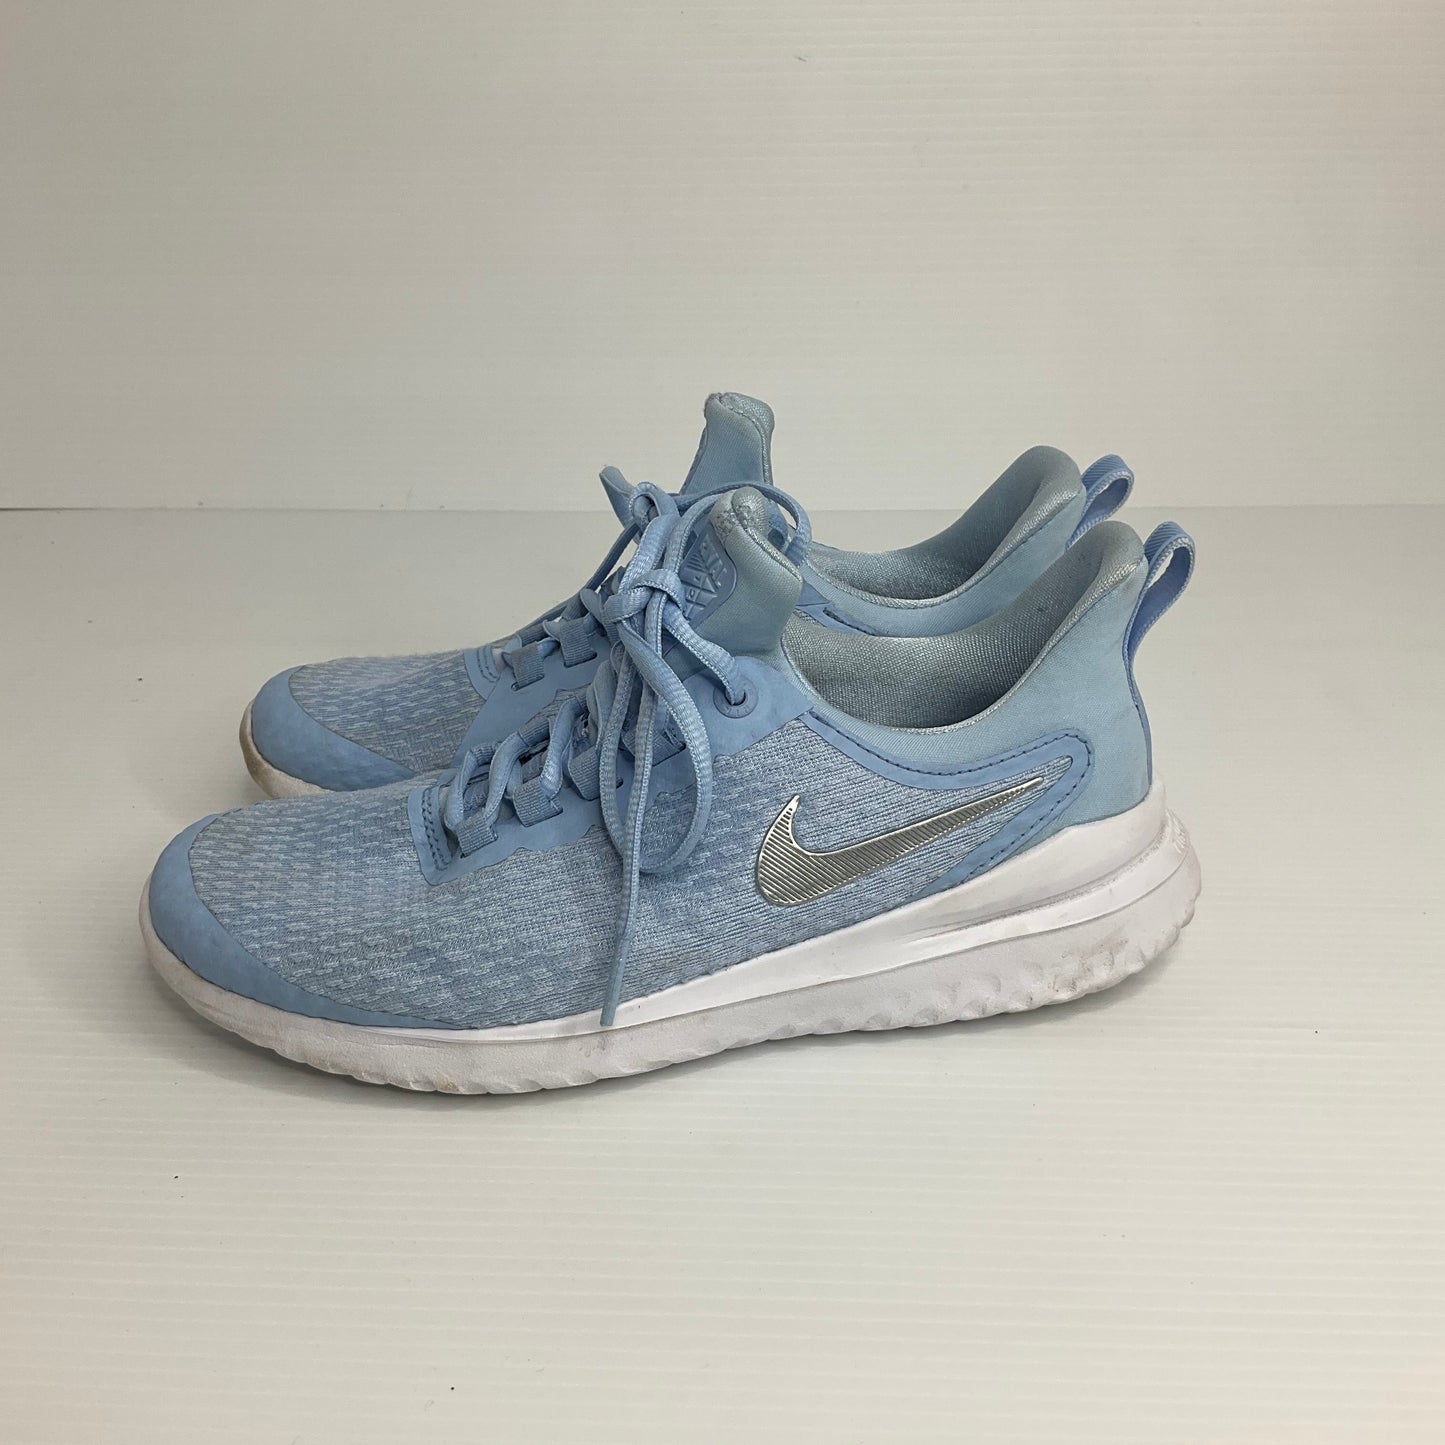 Blue Shoes Athletic Nike, Size 6.5